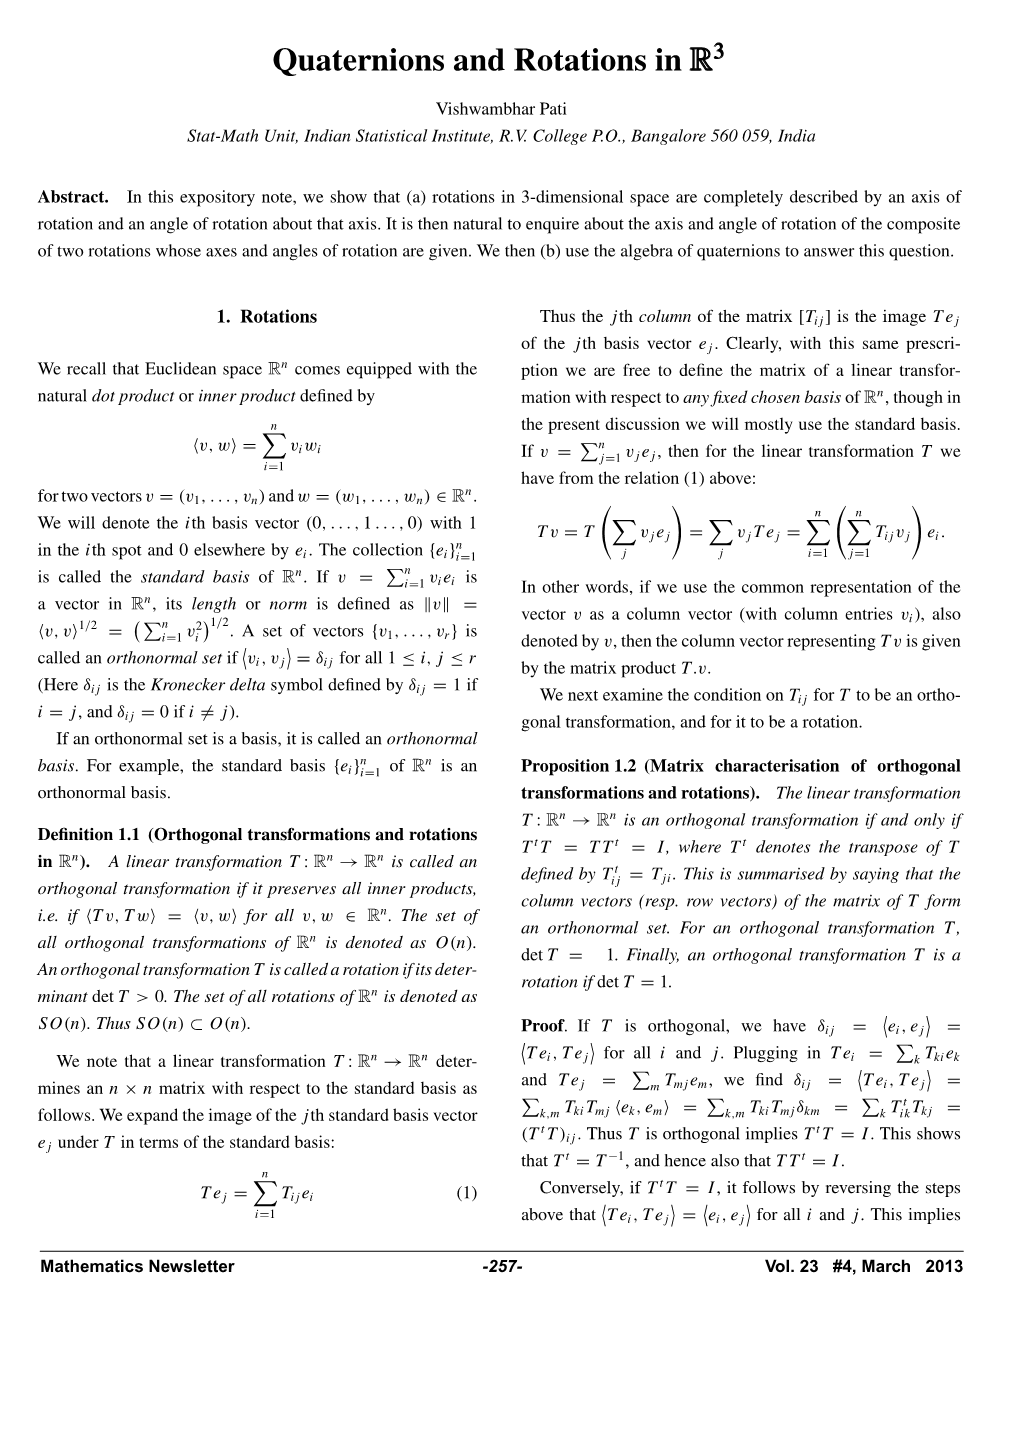 Mathematics Newsletter Volume 23. No4, March 2013